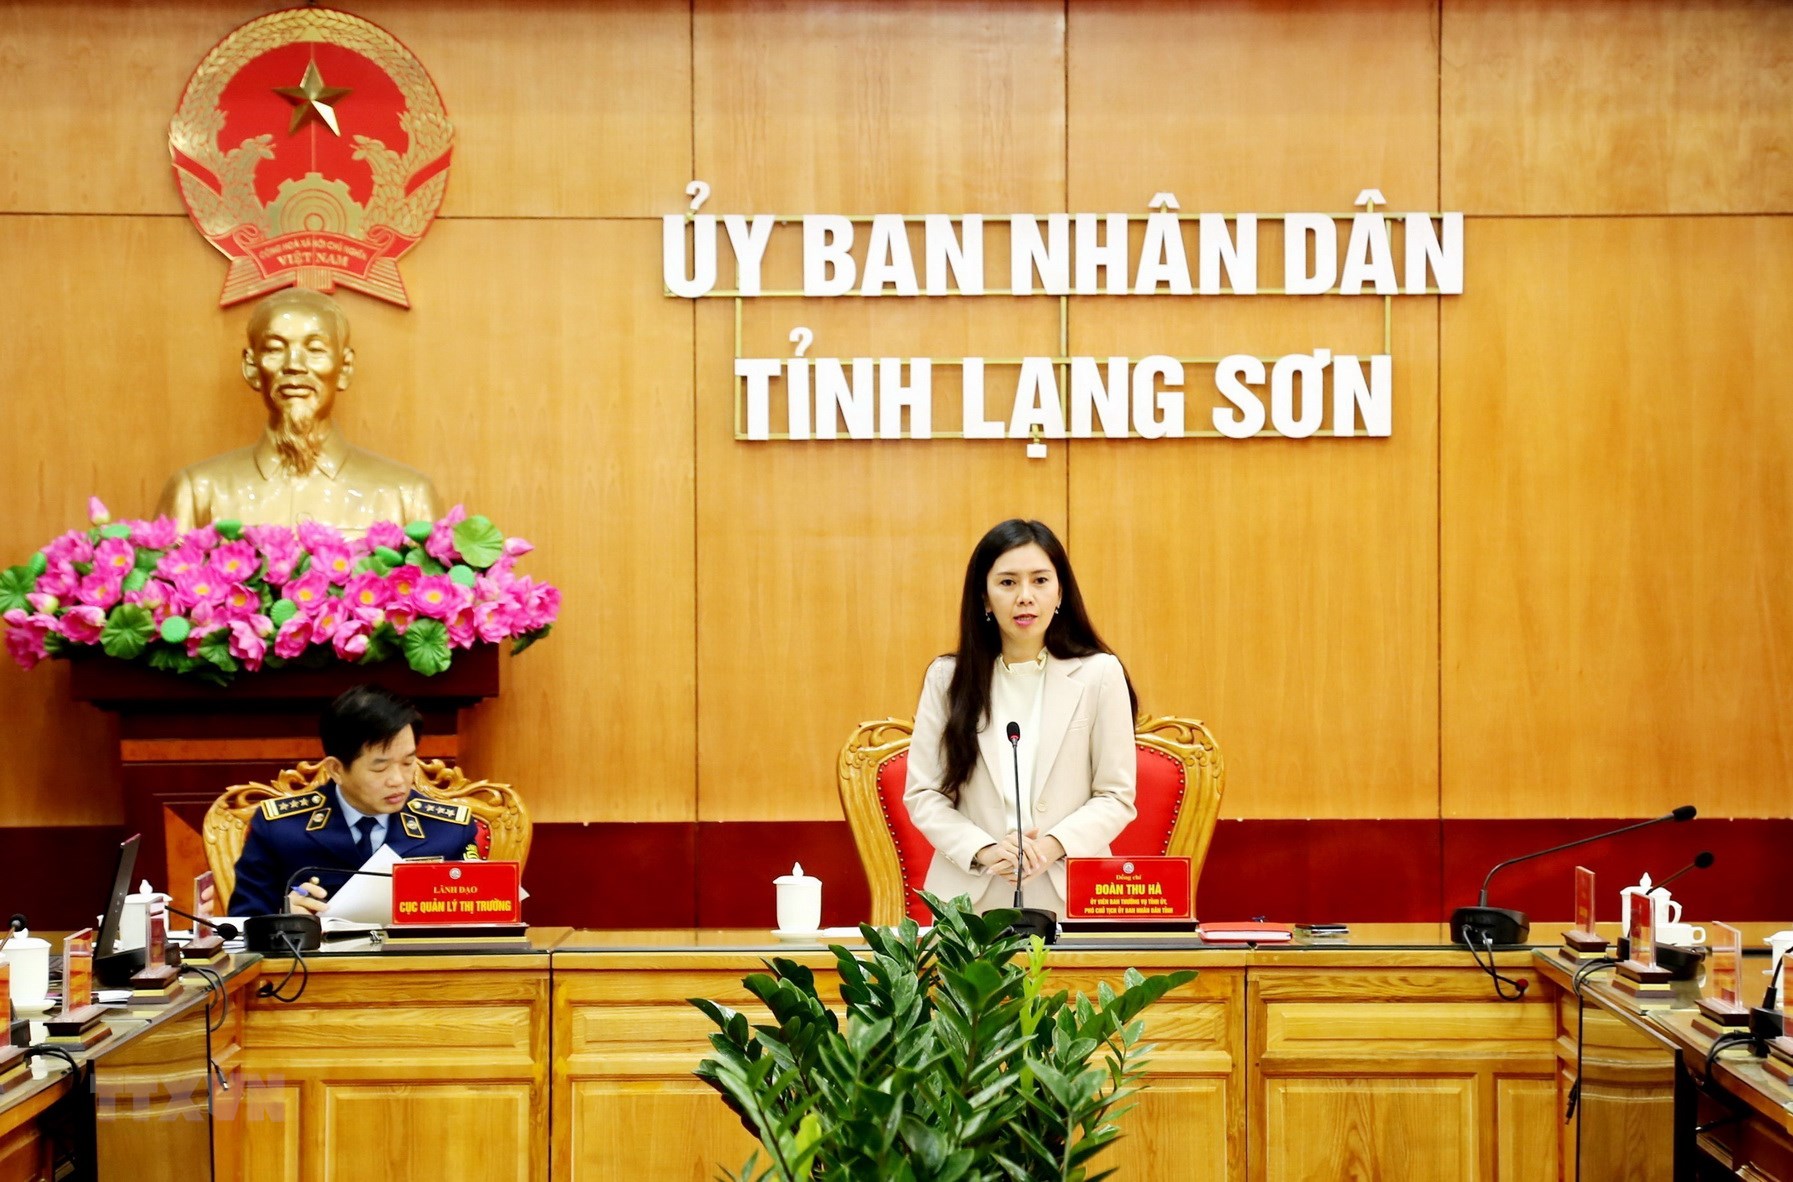 Phê chuẩn kết quả miễn nhiệm Phó Chủ tịch UBND tỉnh Lạng Sơn